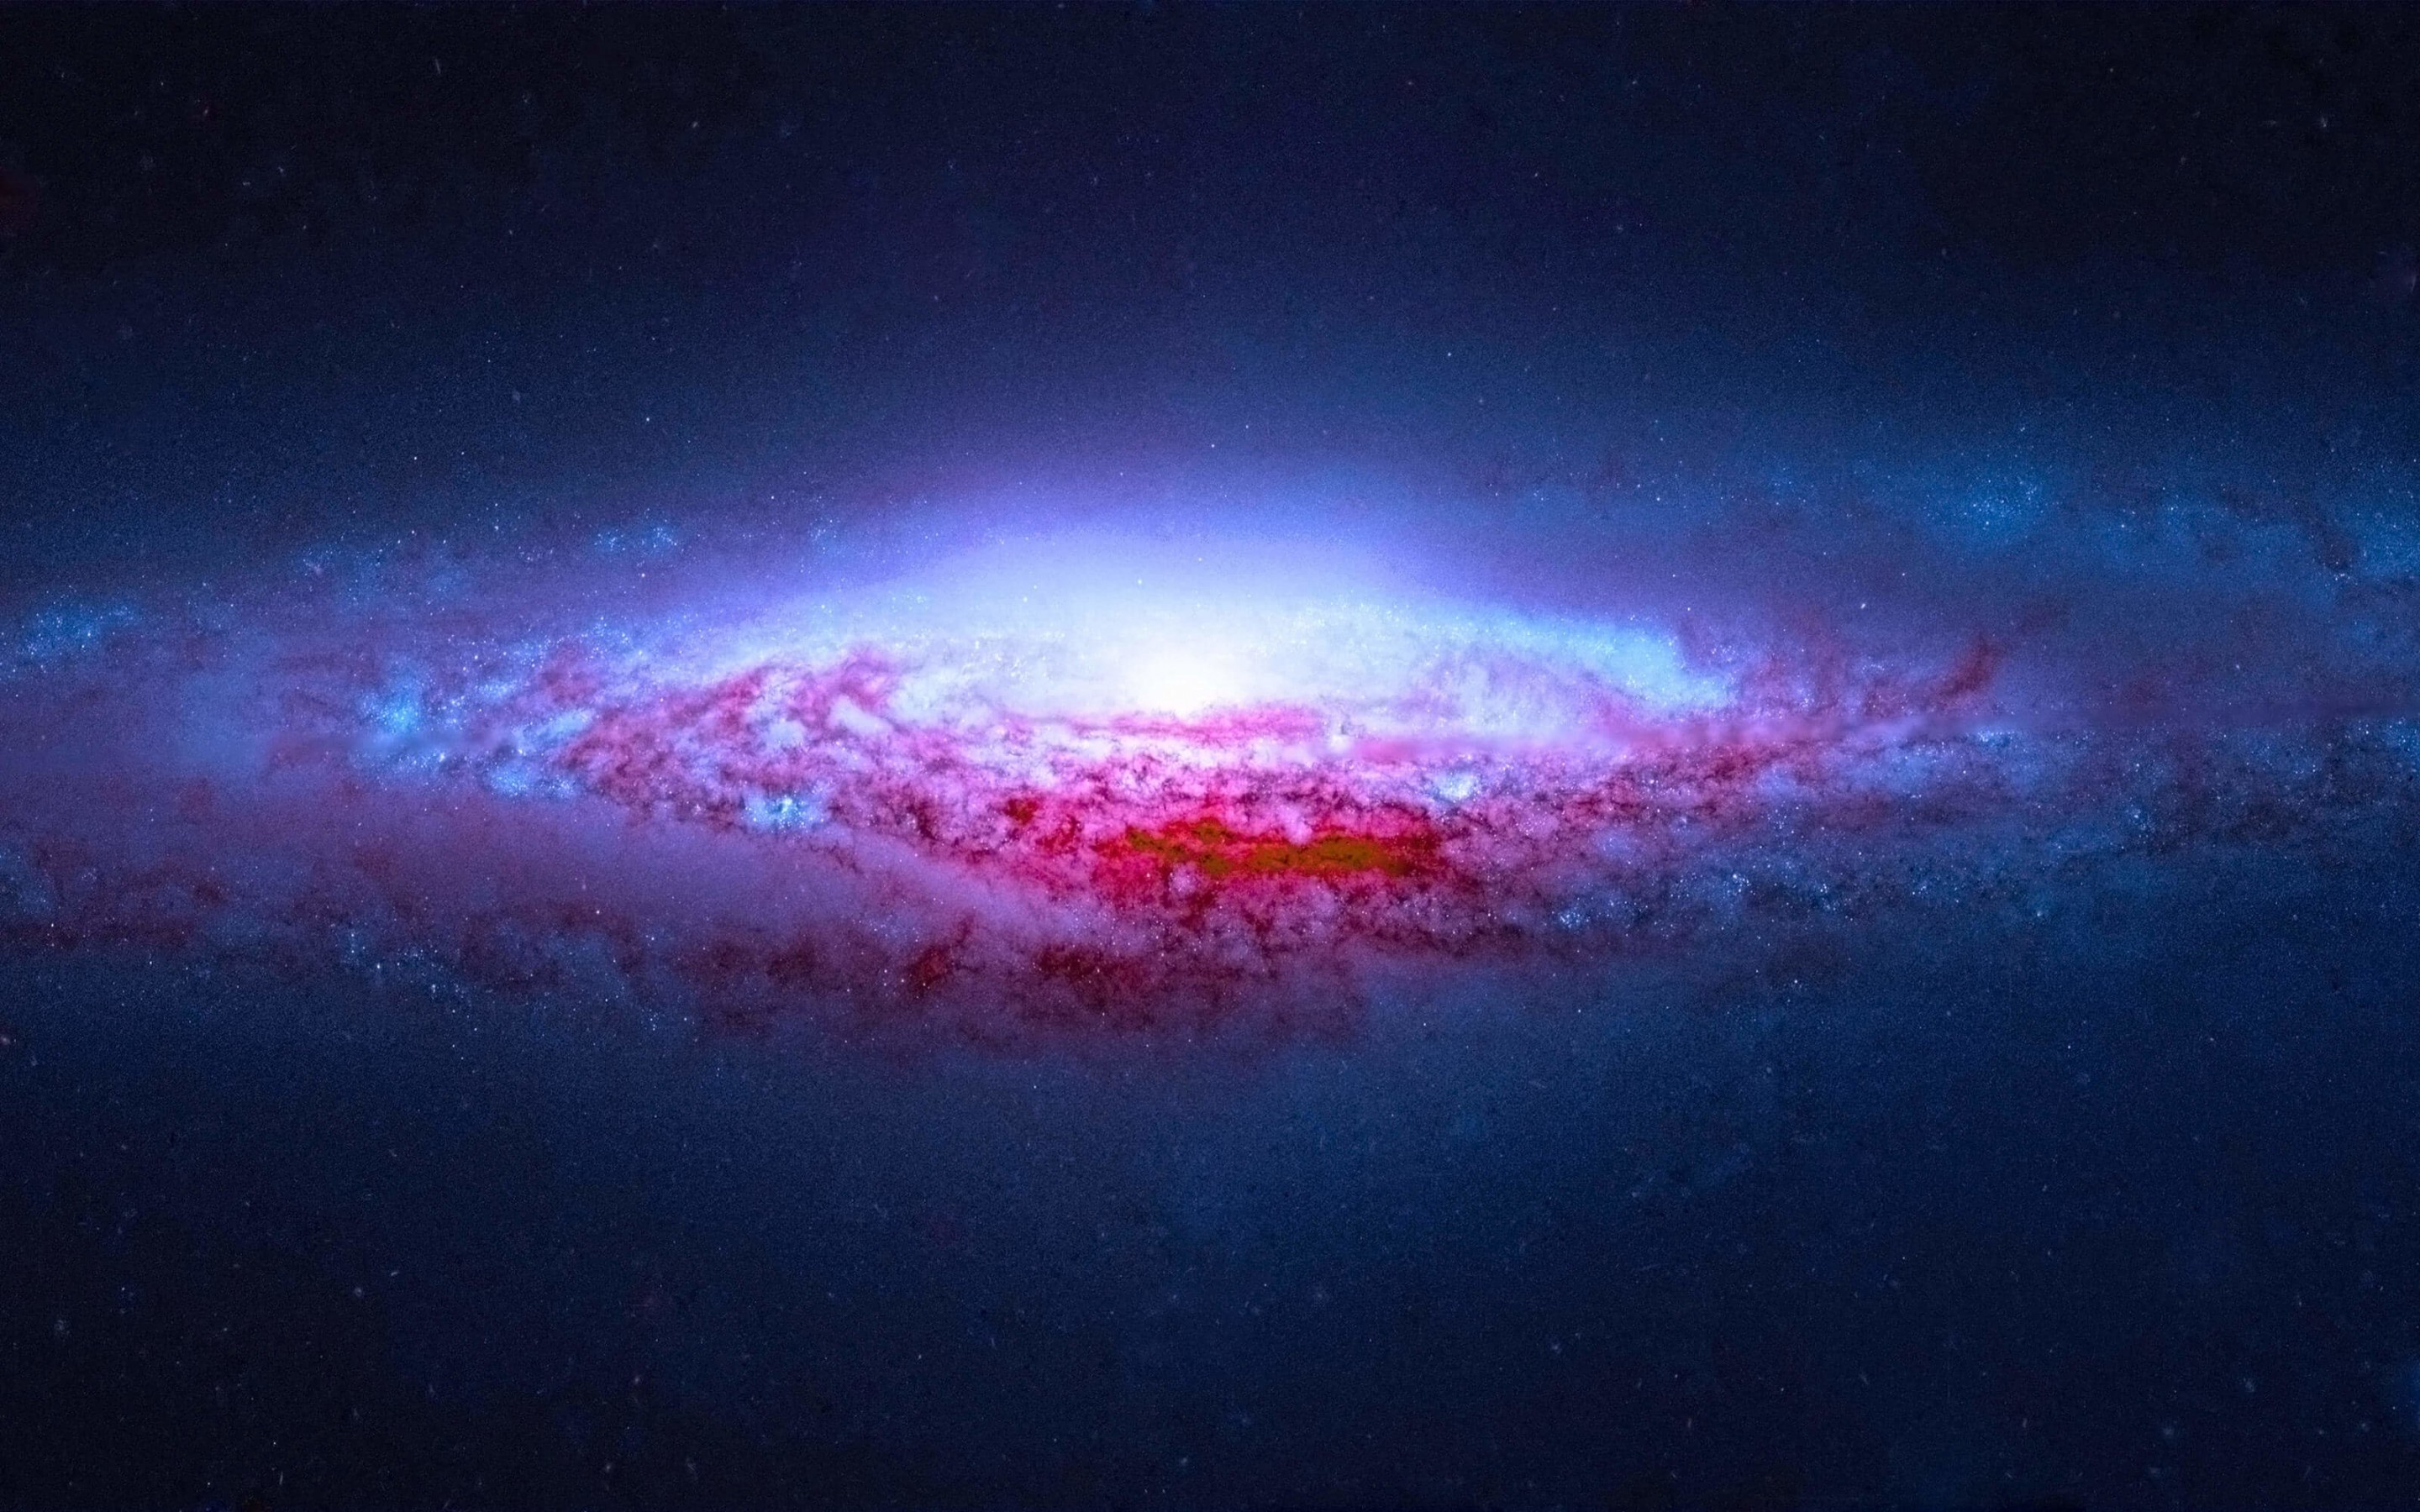 NGC 2683 Spiral Galaxy Wallpaper for Desktop 2880x1800